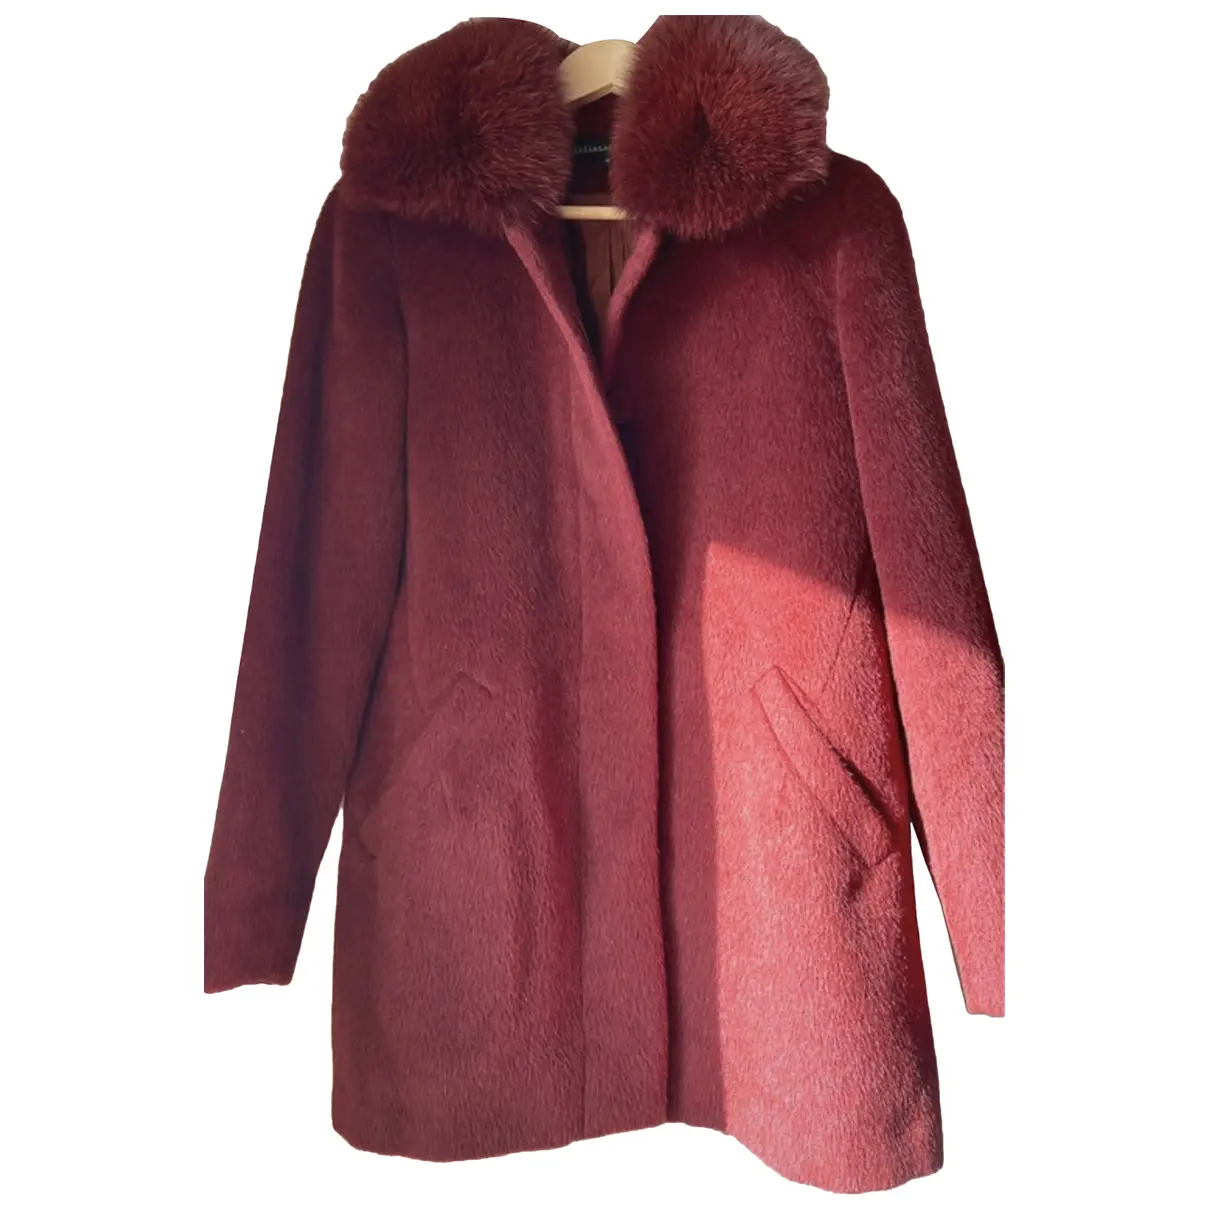 Wool coat Sofia Cashmere